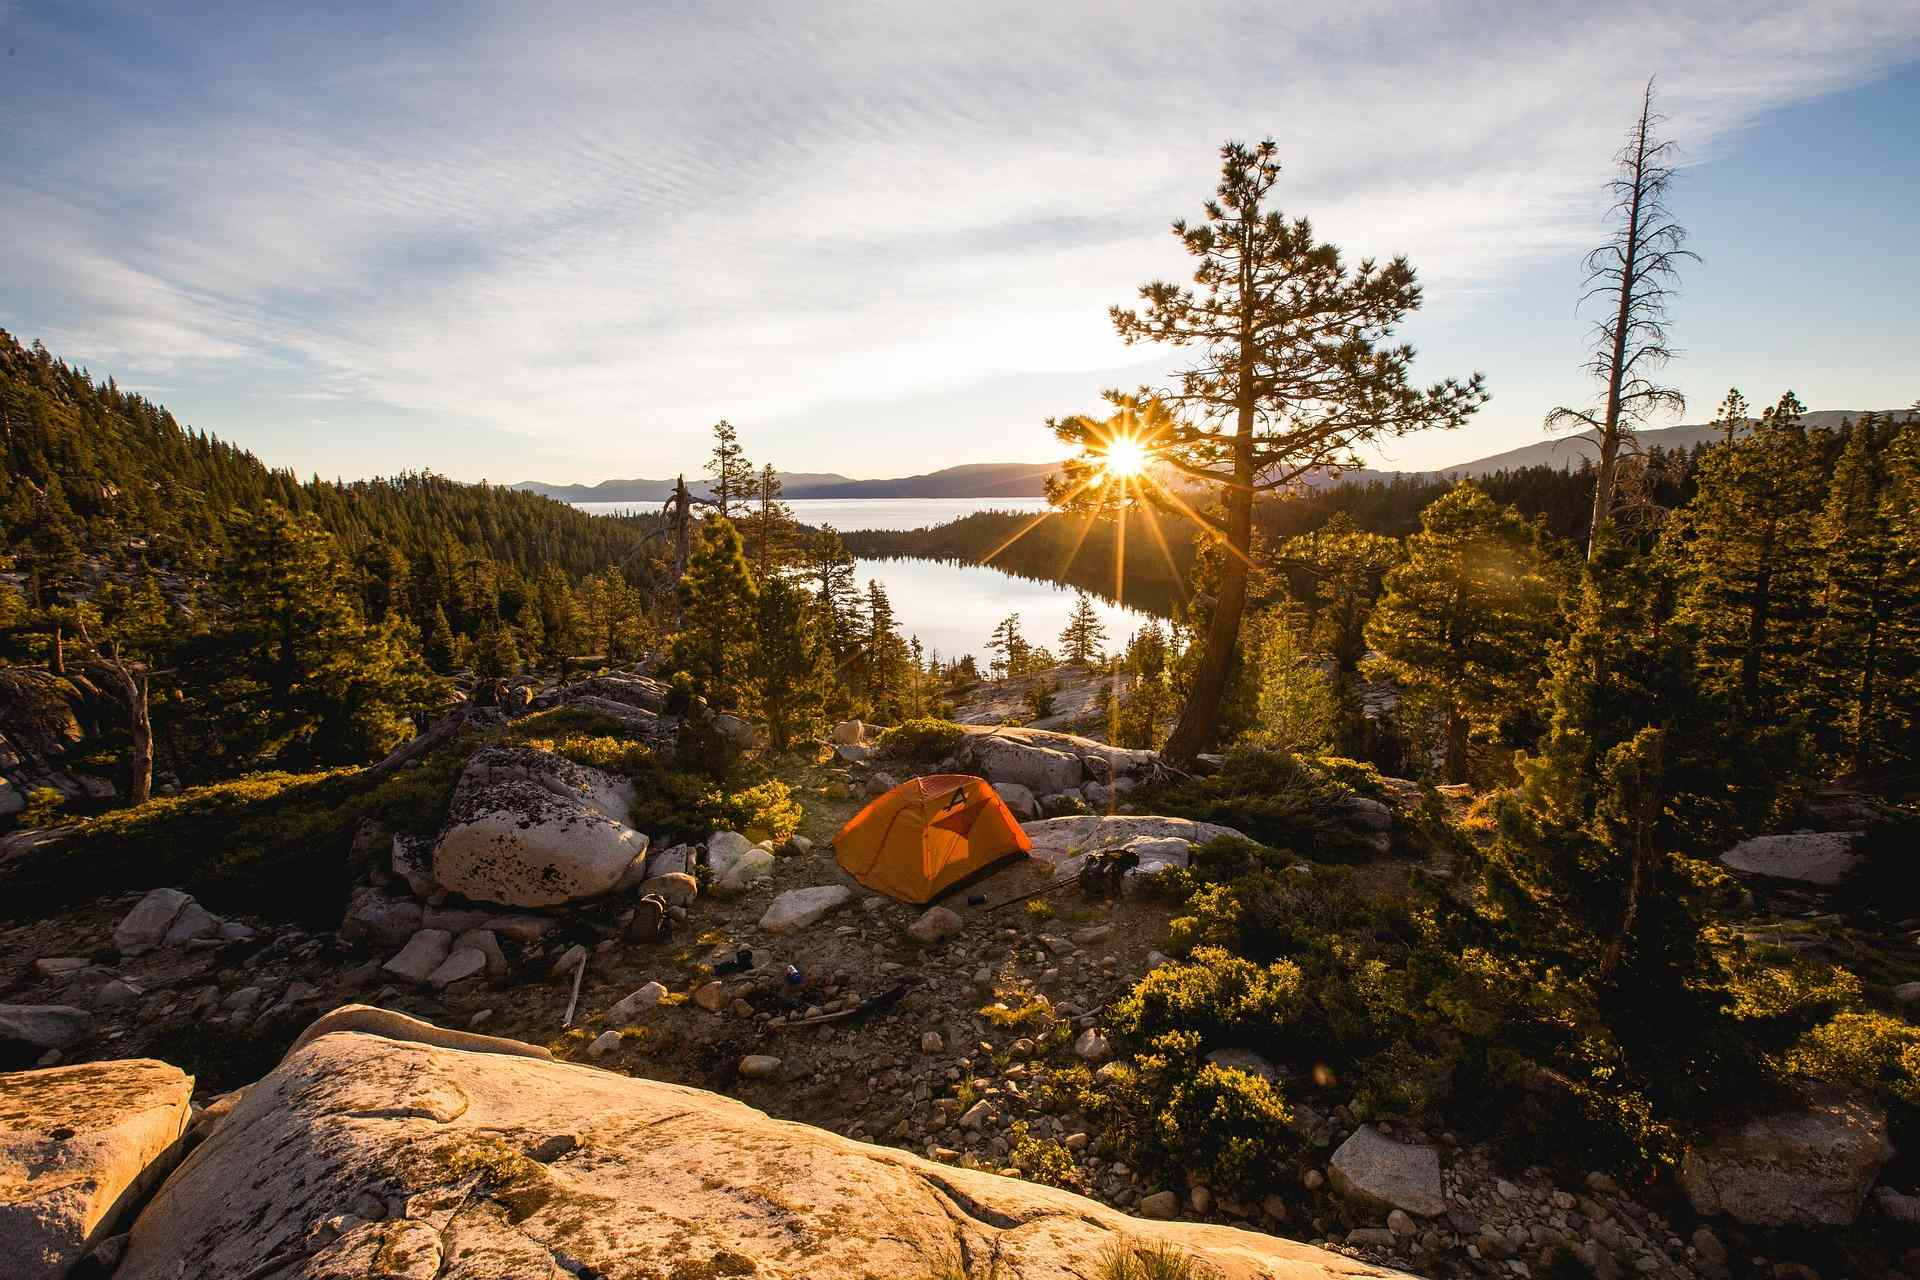 Là où le camping sauvage est autorisé, vous pourrez profiter de beaux paysages en pleine nature